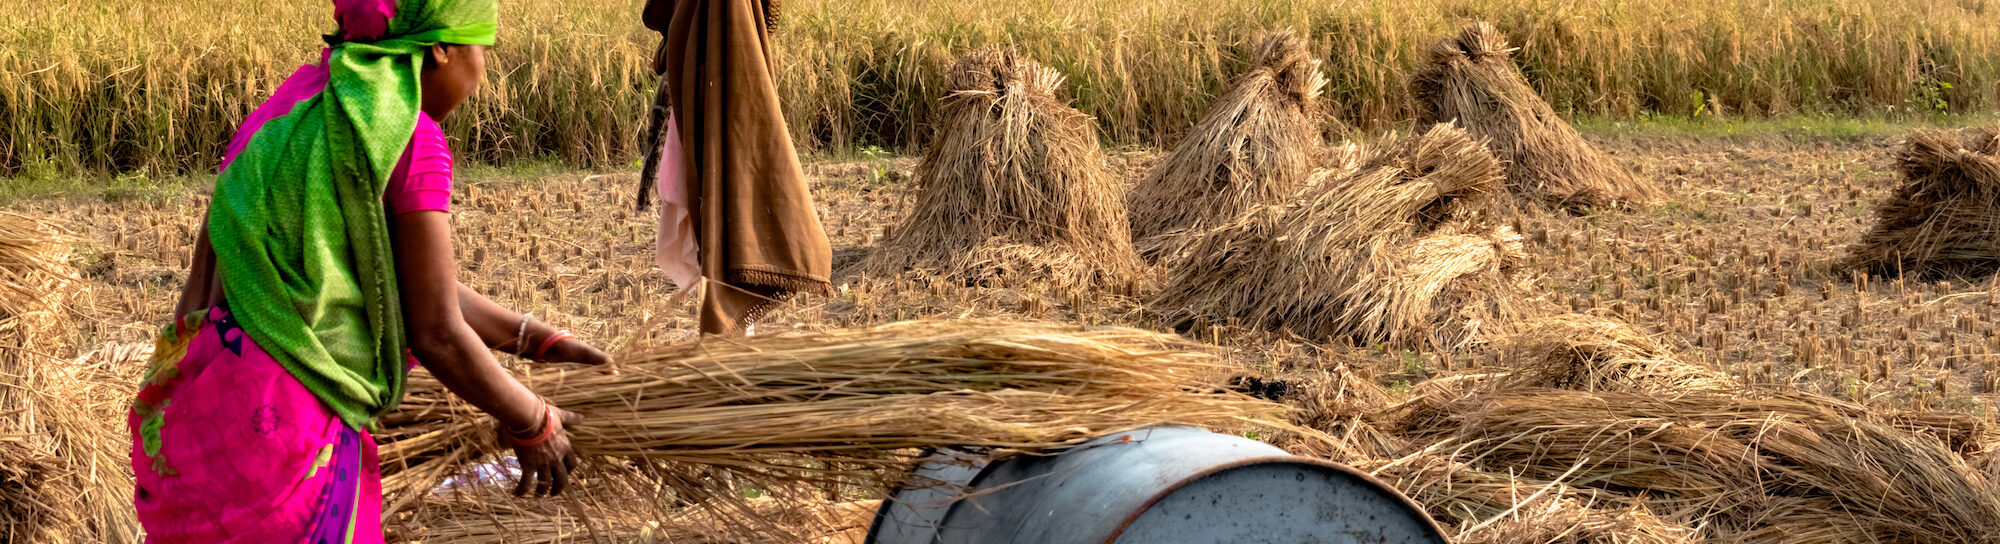 Production de blé: la vague de chaleur qui frappe l’Inde perturbe l’approvisionnement mondial